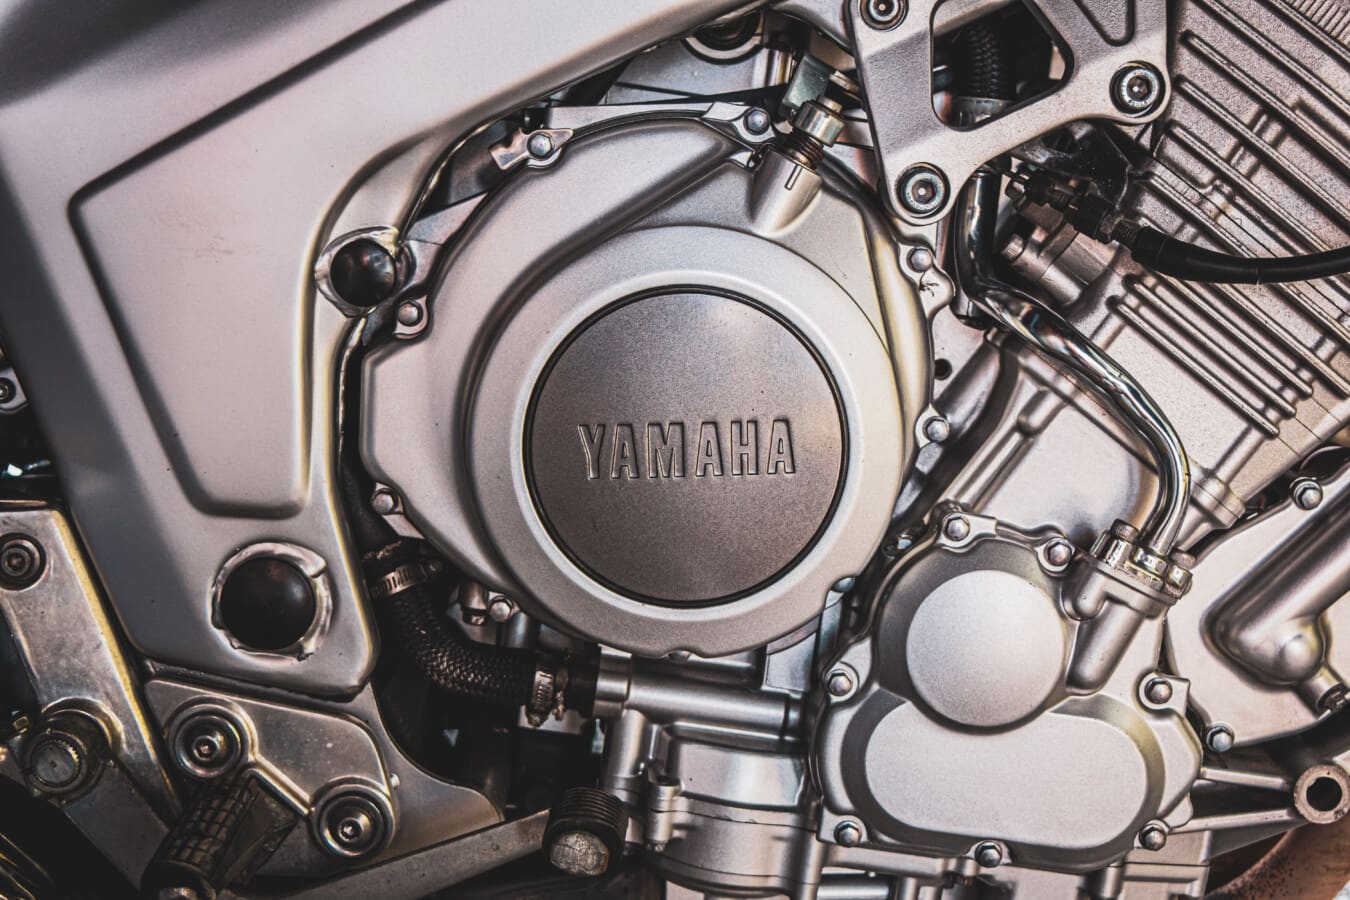 Yamaha, motocicleta, motor, metalice, crom, inginerie, atelier de reparaţii, tehnologie, industria, electronice